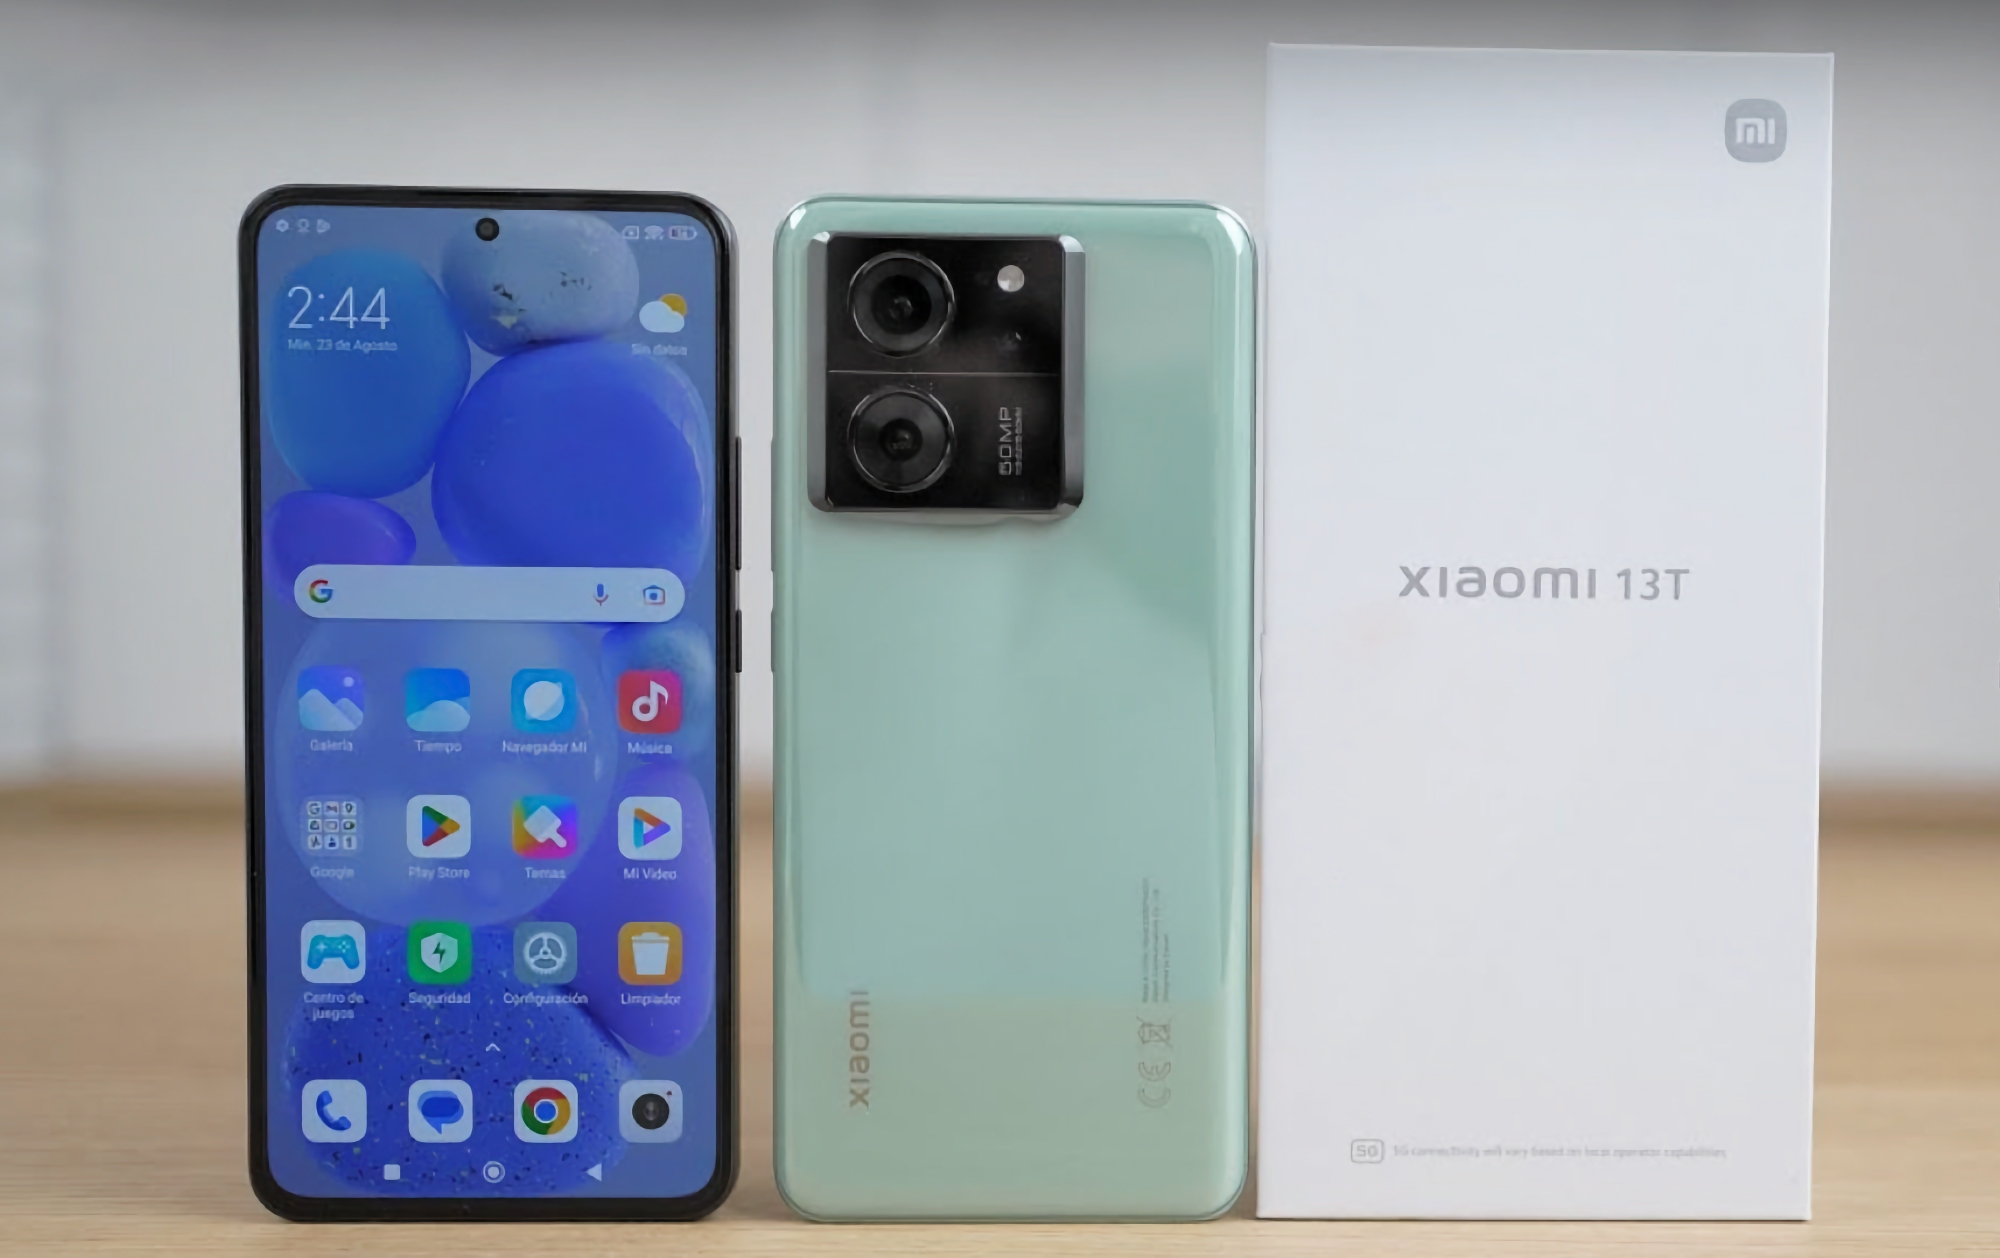 En unboxing-video af den endnu ikke annoncerede Xiaomi 13T-smartphone er dukket op på YouTube.